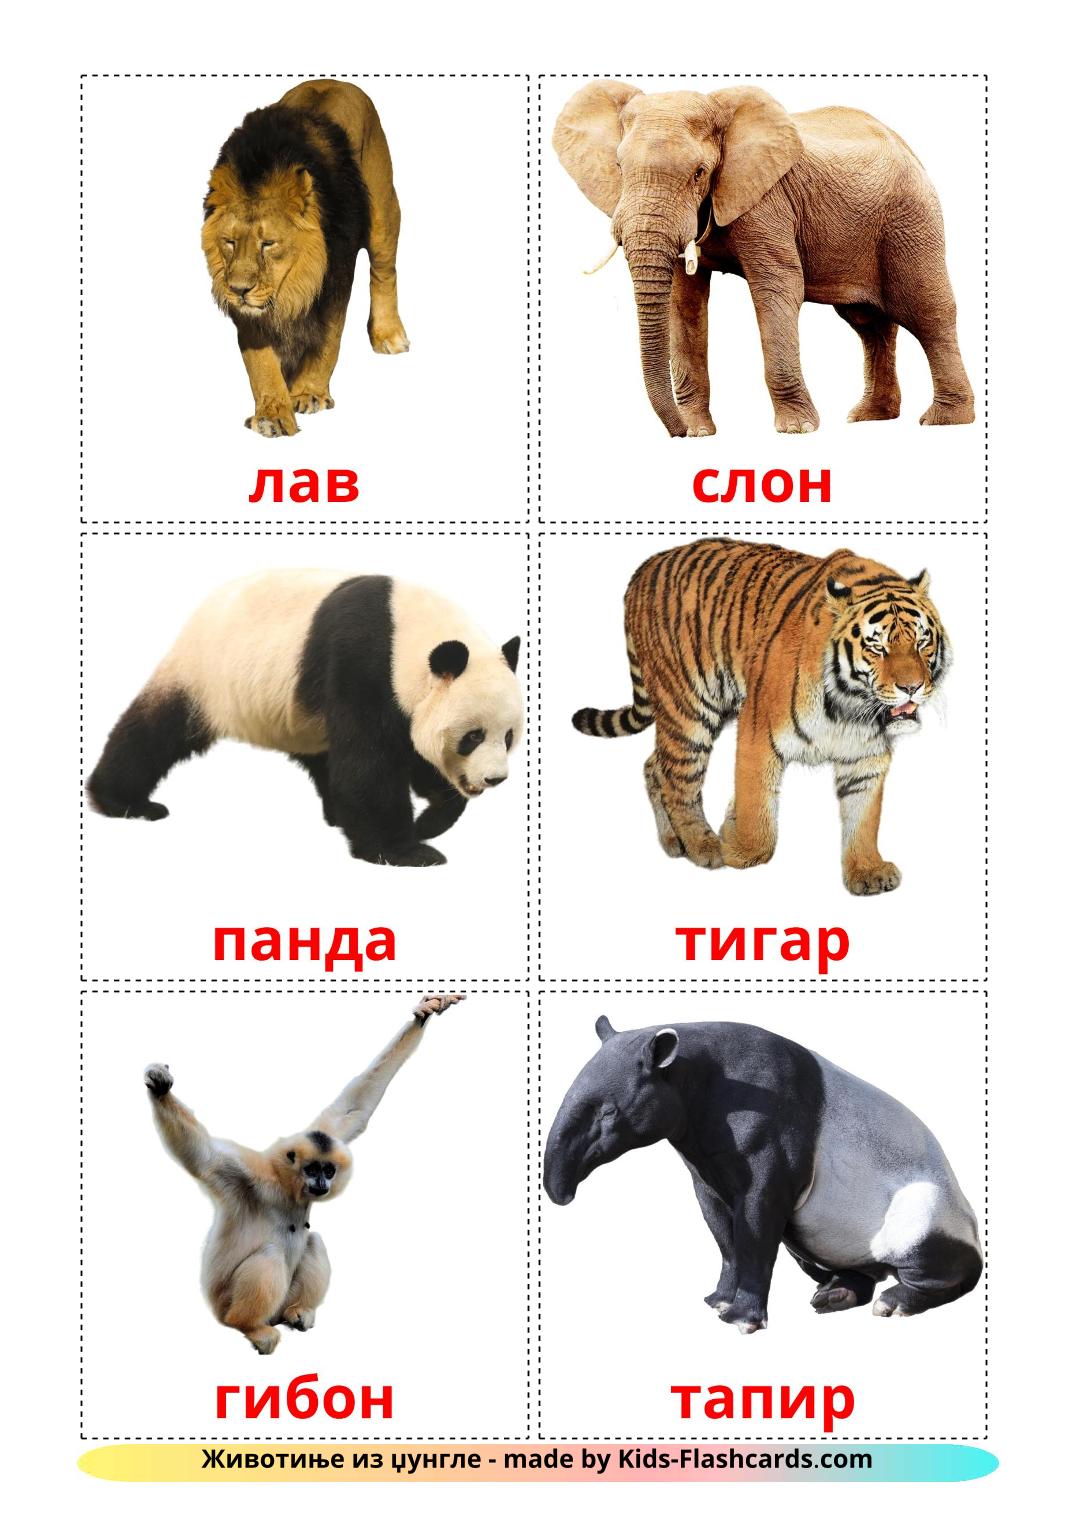 Les Animaux de la Jungle - 21 Flashcards serbe(cyrillique) imprimables gratuitement